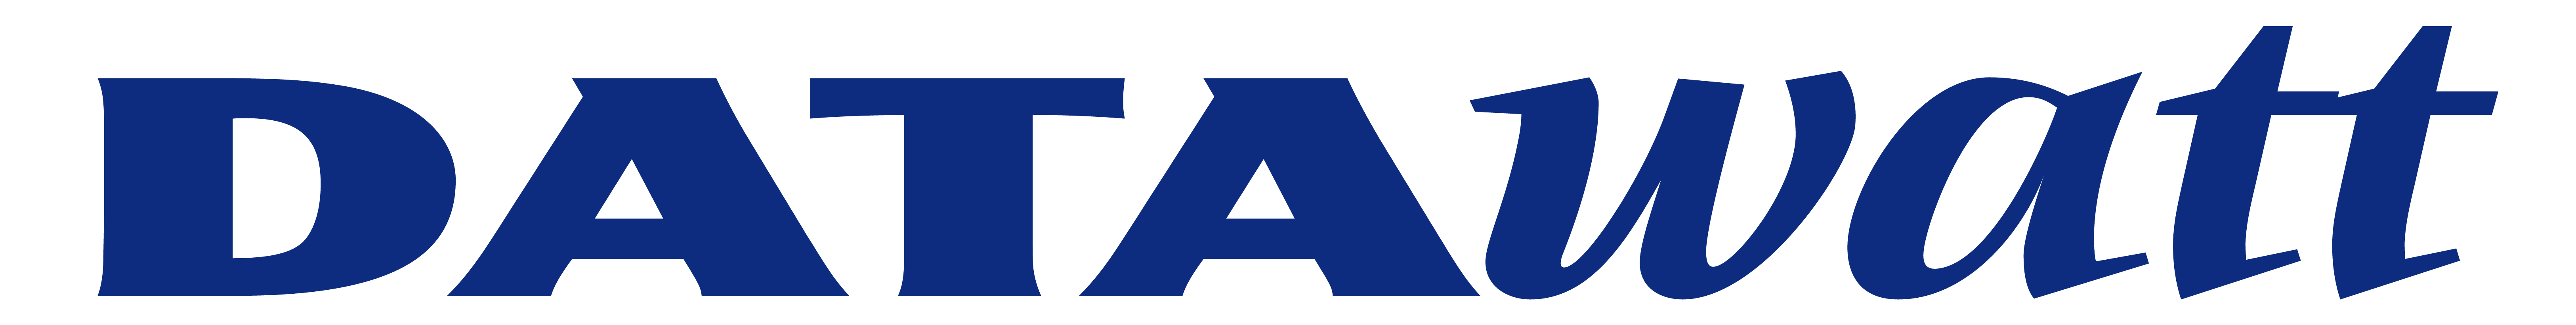 Datawatt logo